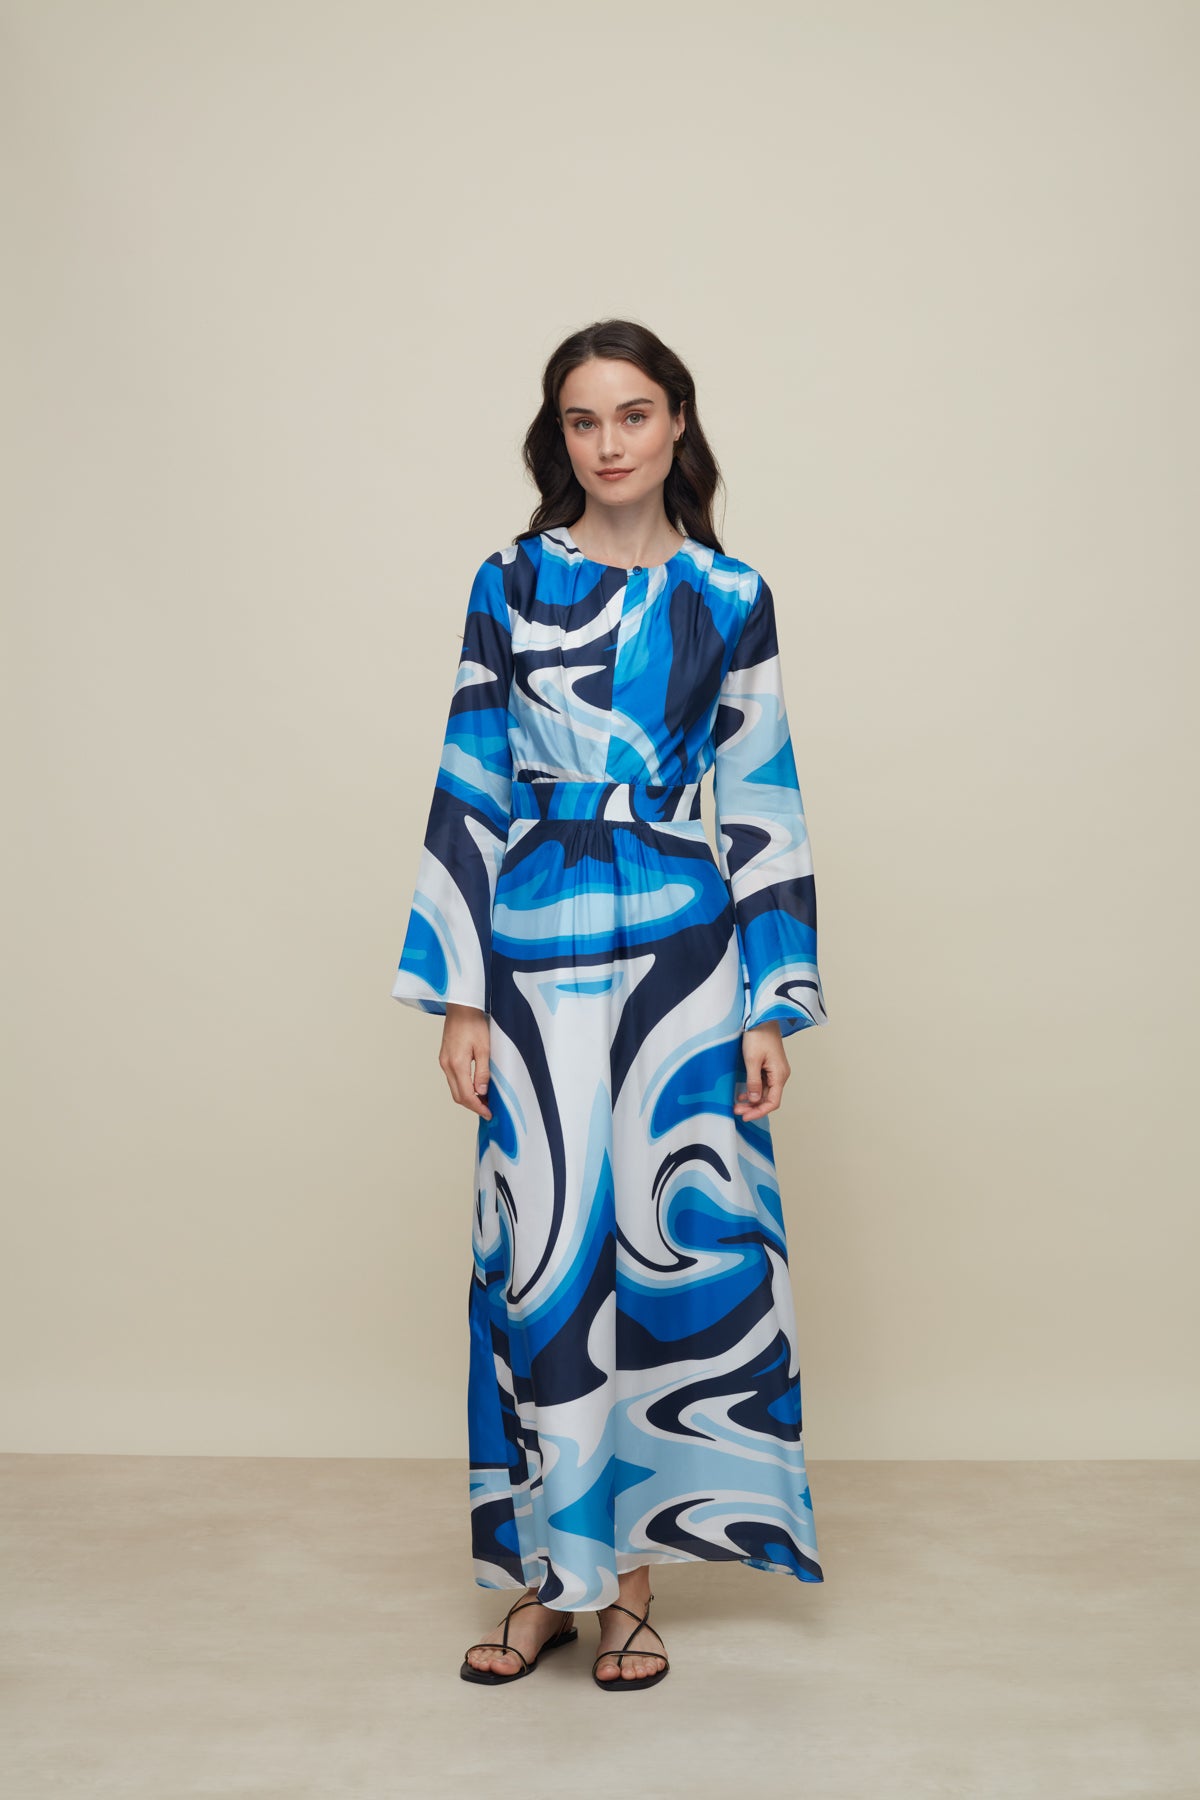 Galeria-Lavander Liquid Blue Silk Dress-Justbrazil